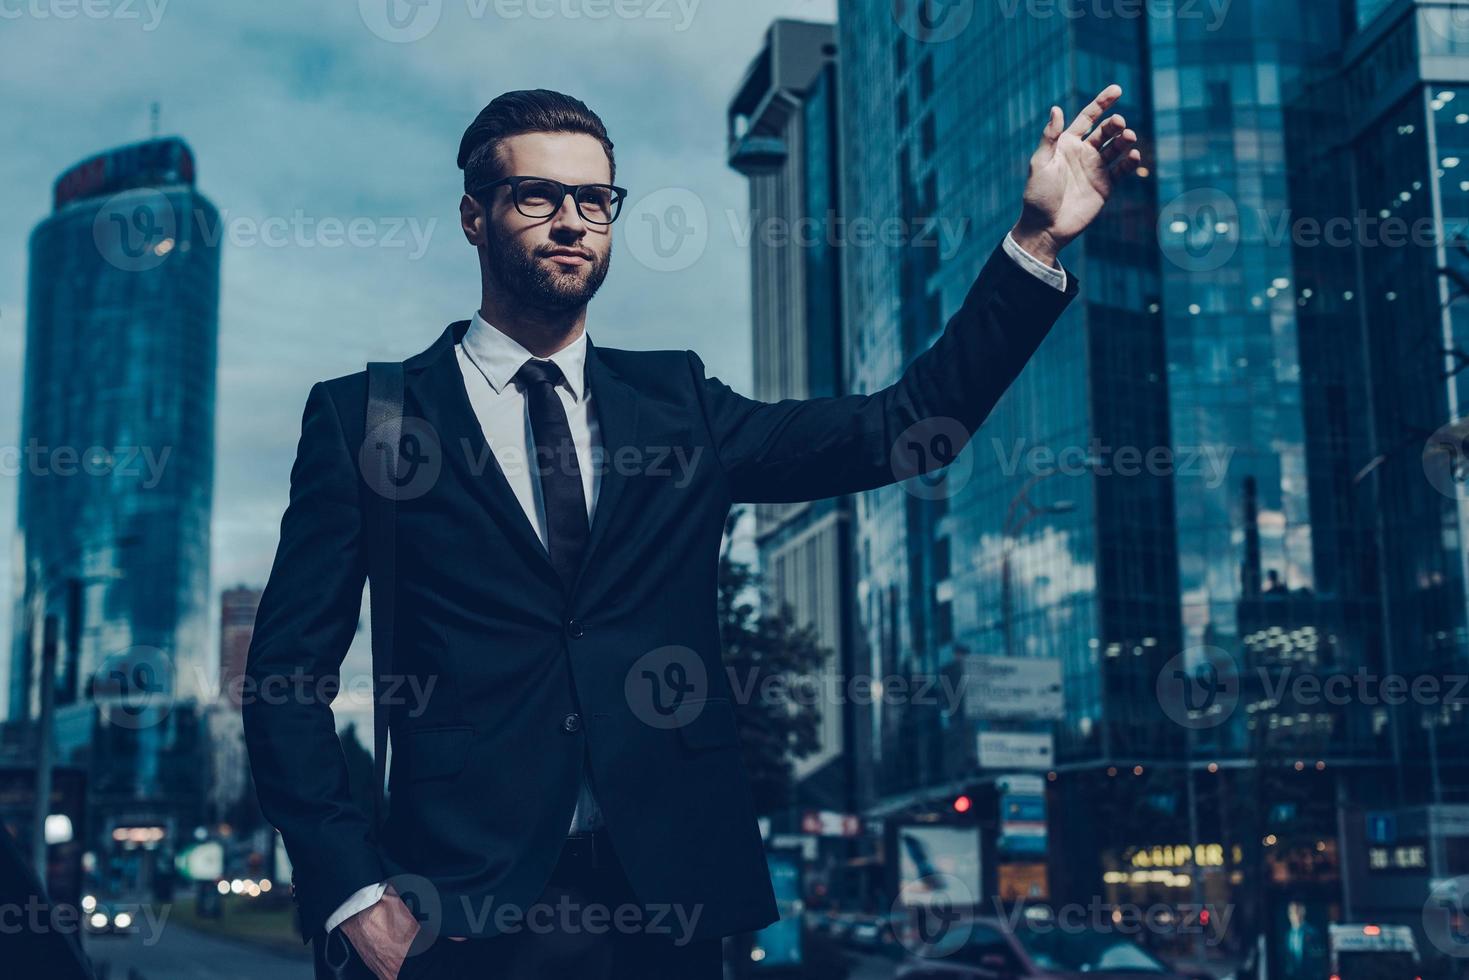 coger taxi. imagen nocturna de un joven hombre de negocios confiado con traje completo tomando un taxi mientras levanta el brazo y se para al aire libre con el paisaje urbano en el fondo foto